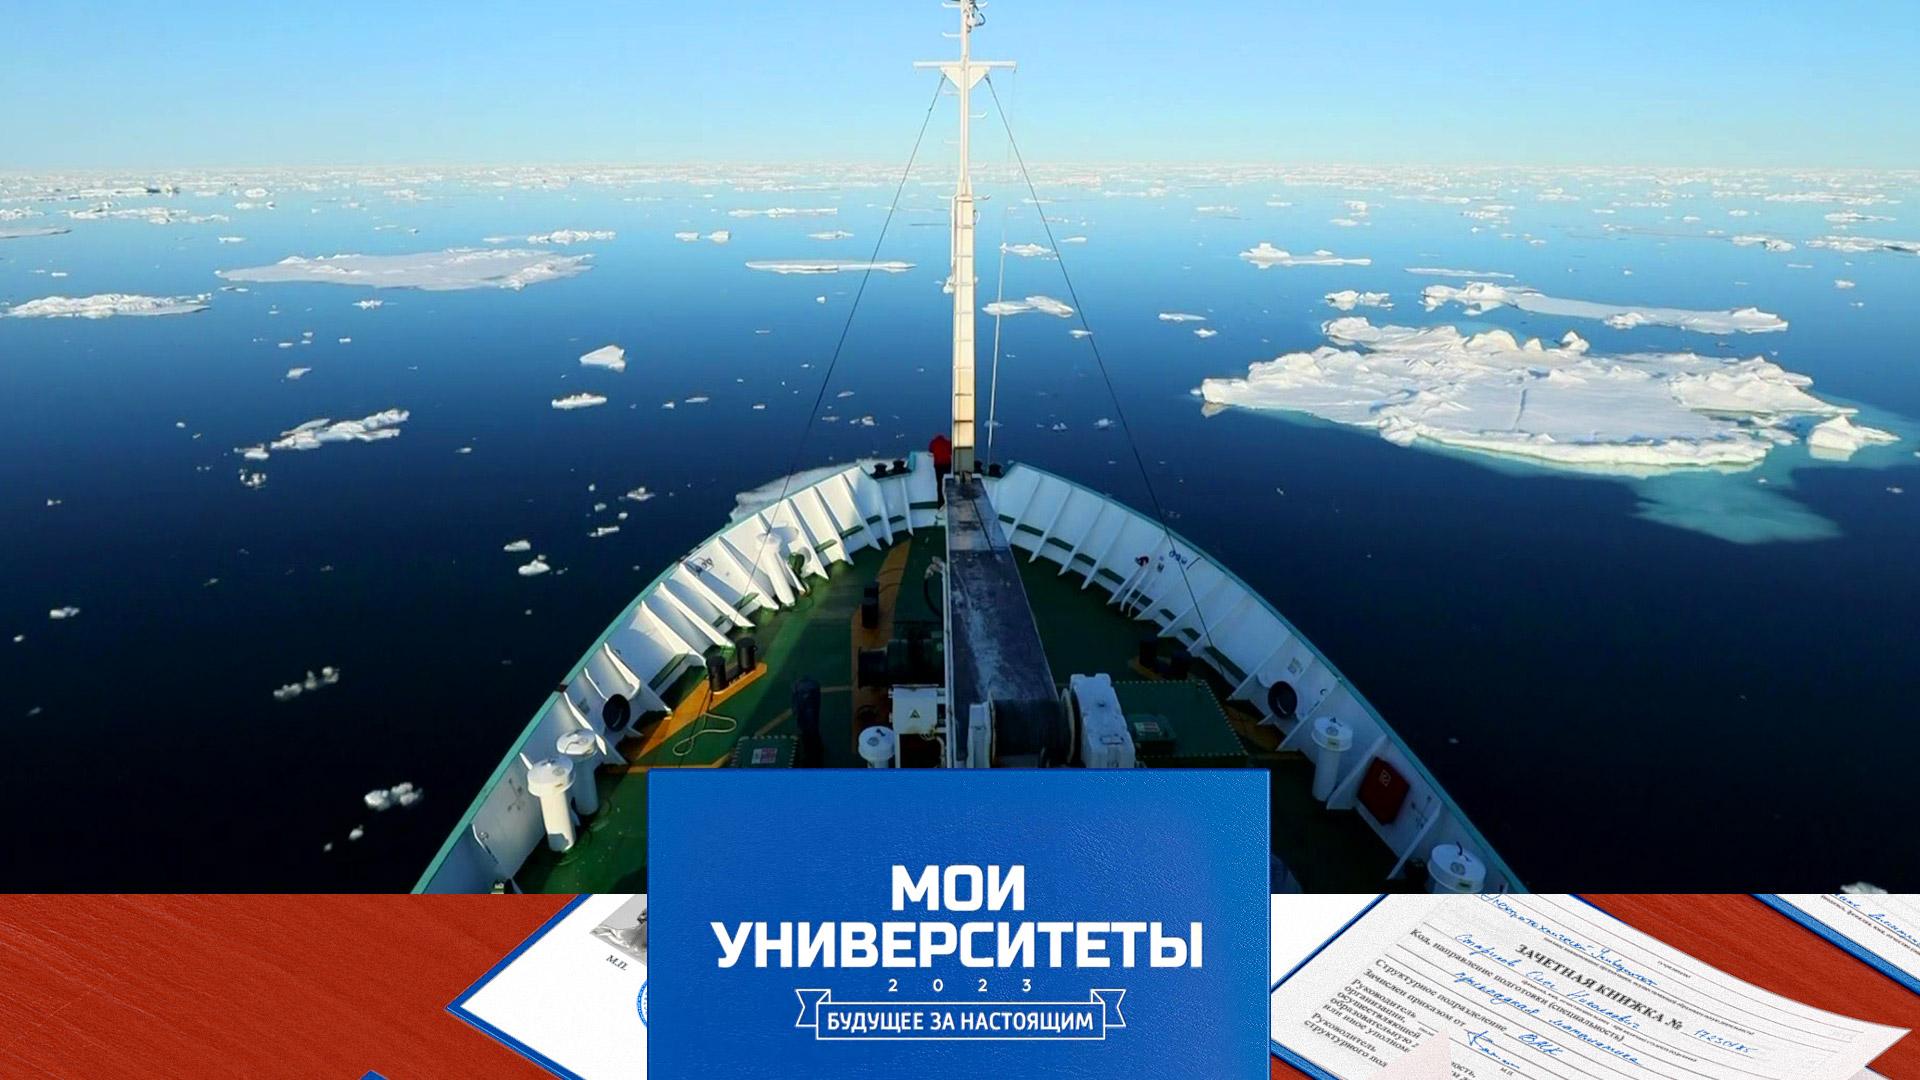 Арктический плавучий университет | «Мои университеты. Будущее за настоящим»